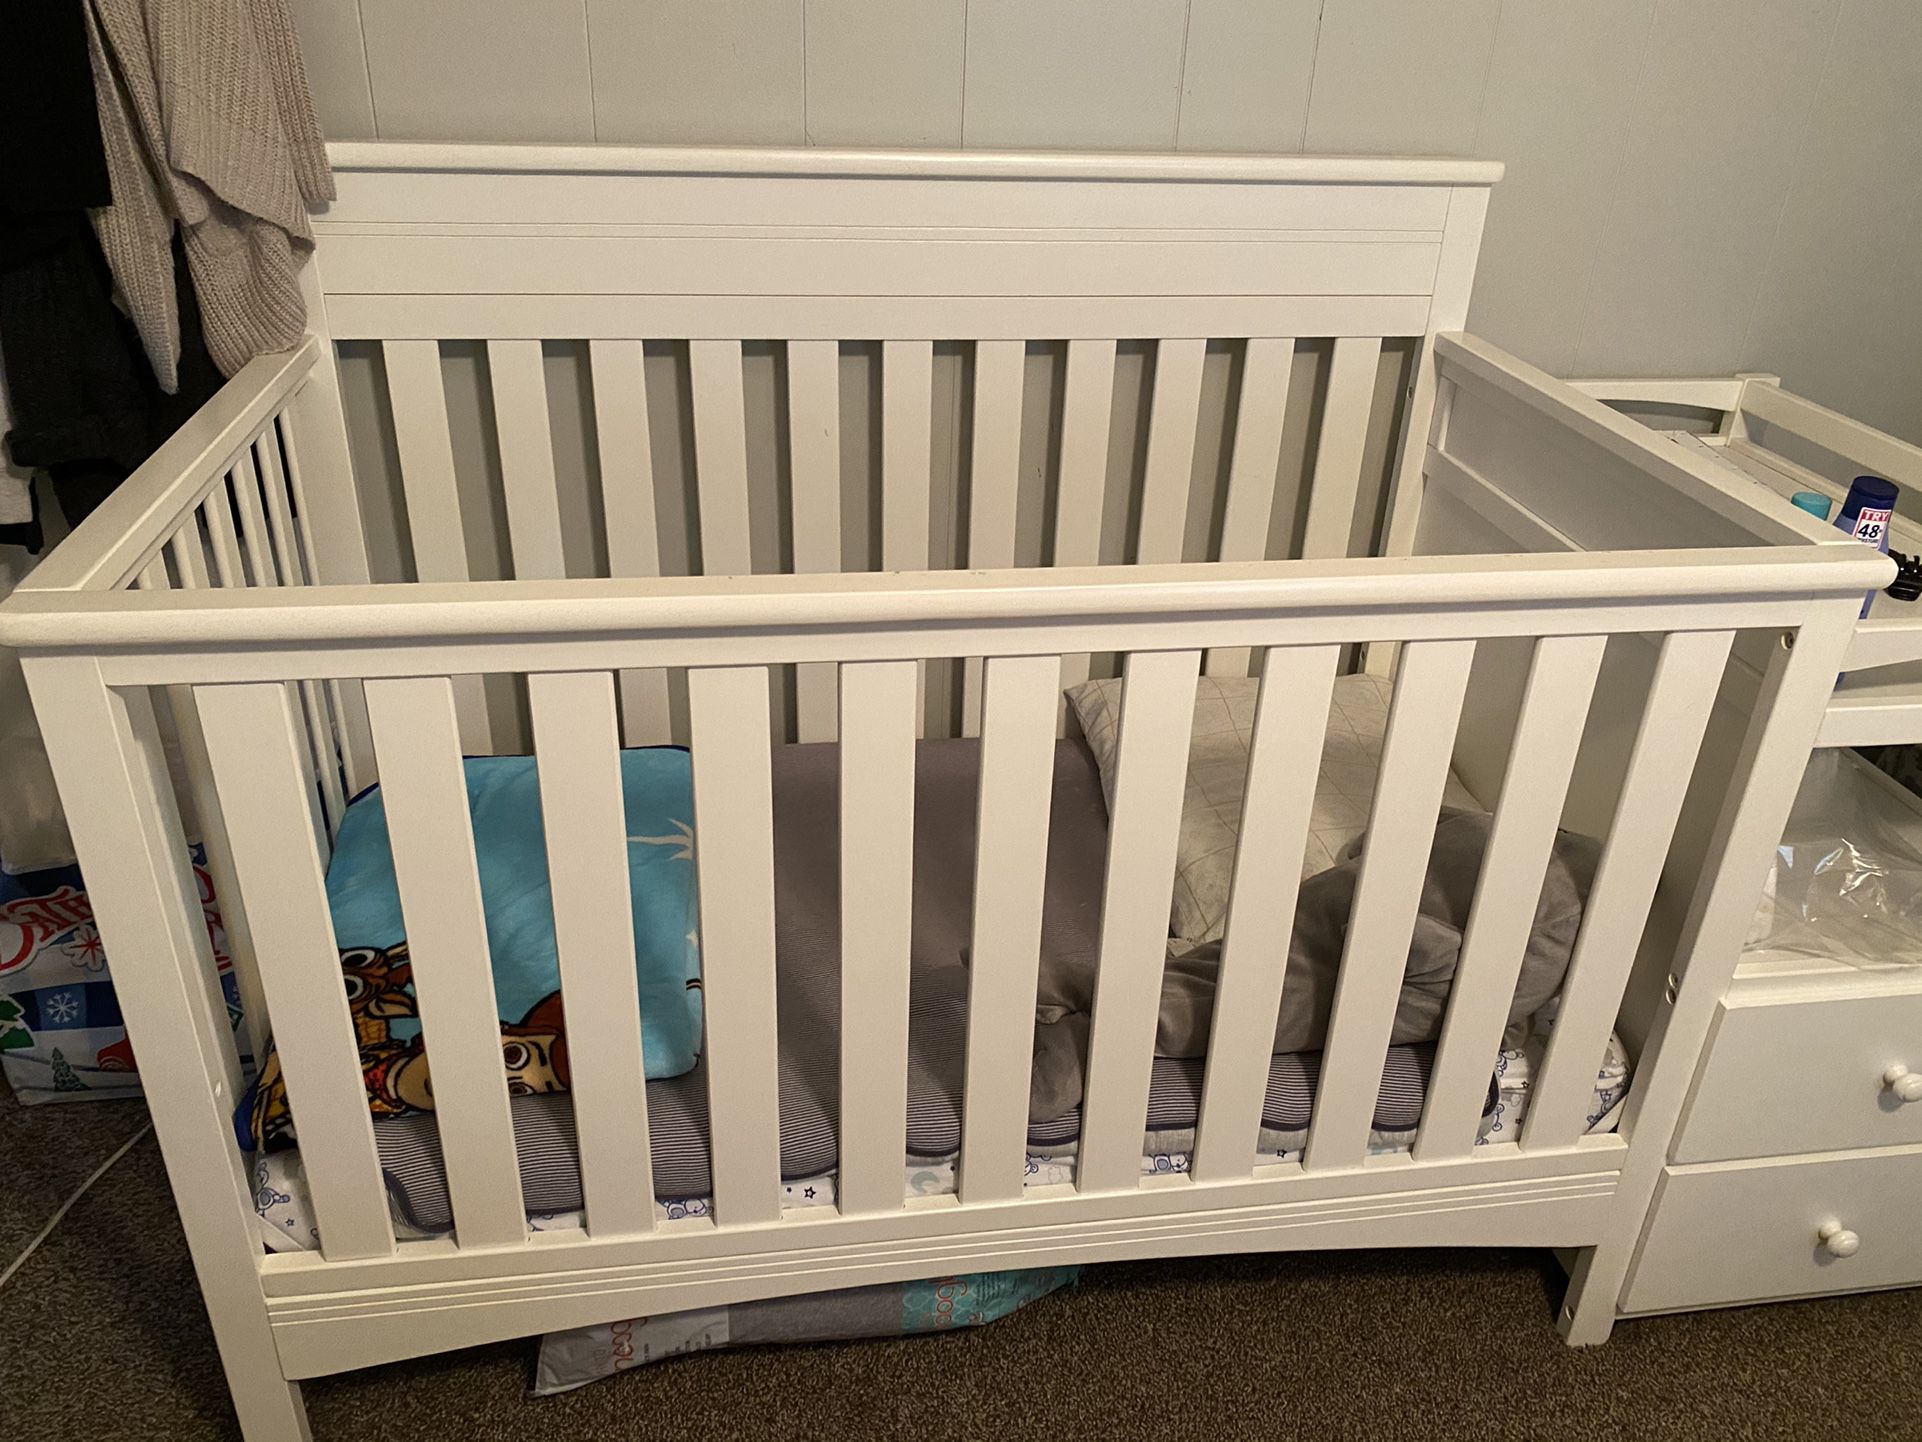 4 In 1 Baby Crib For Sale! $150 OBO!